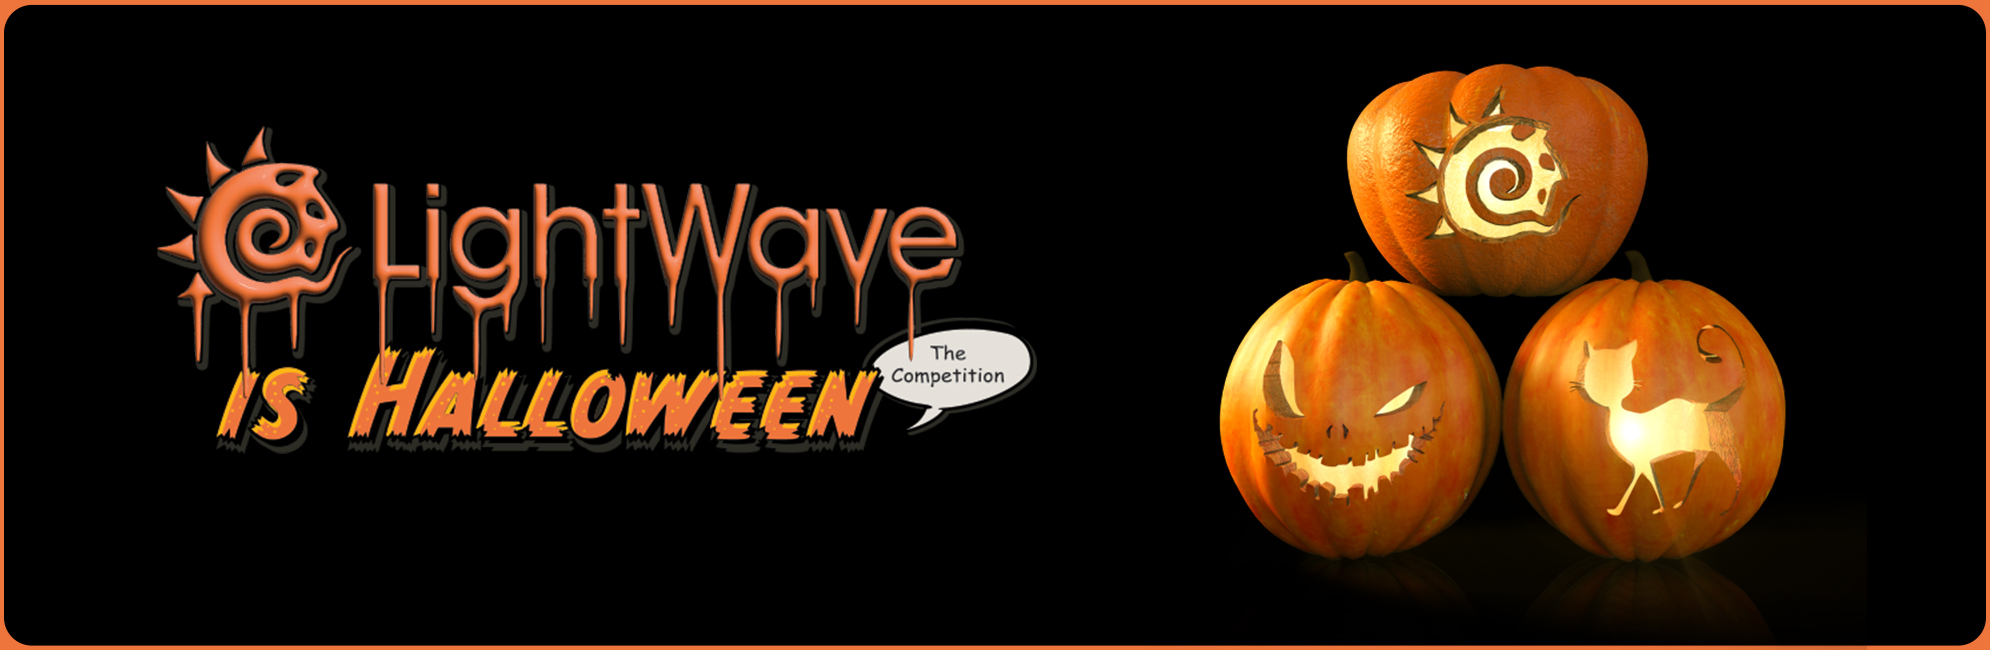 Nome: LightWave is Halloween  LightWave 3D Promo 20320918.jpg
Visite: 59
Dimensione: 387.4 KB